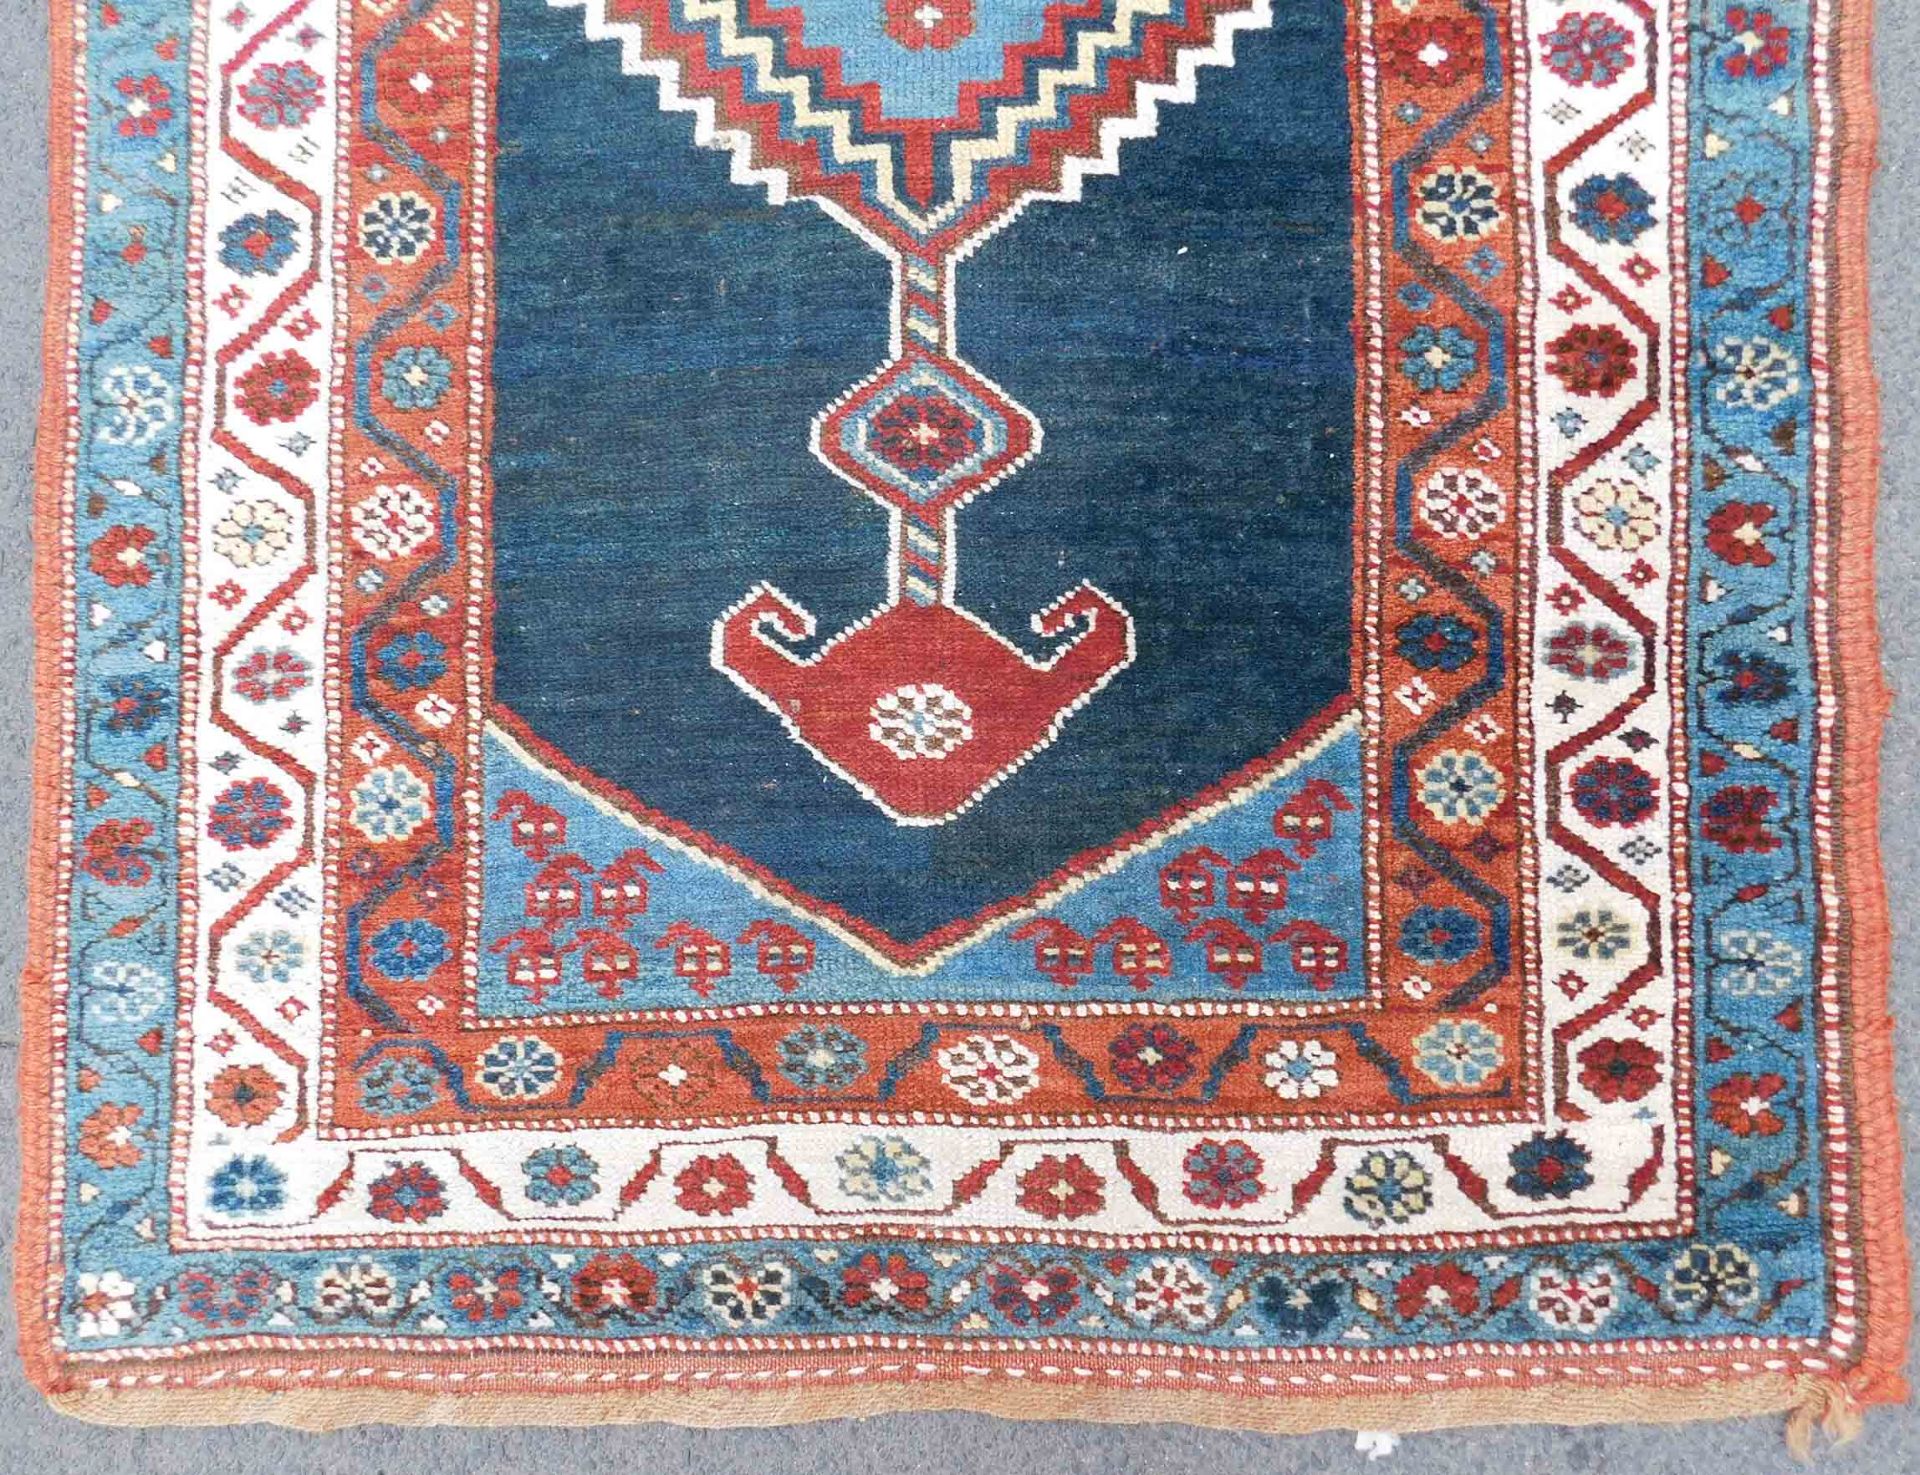 Shah - Savan Galerie Stammesteppich. Azerbaijan antik. - Bild 2 aus 17